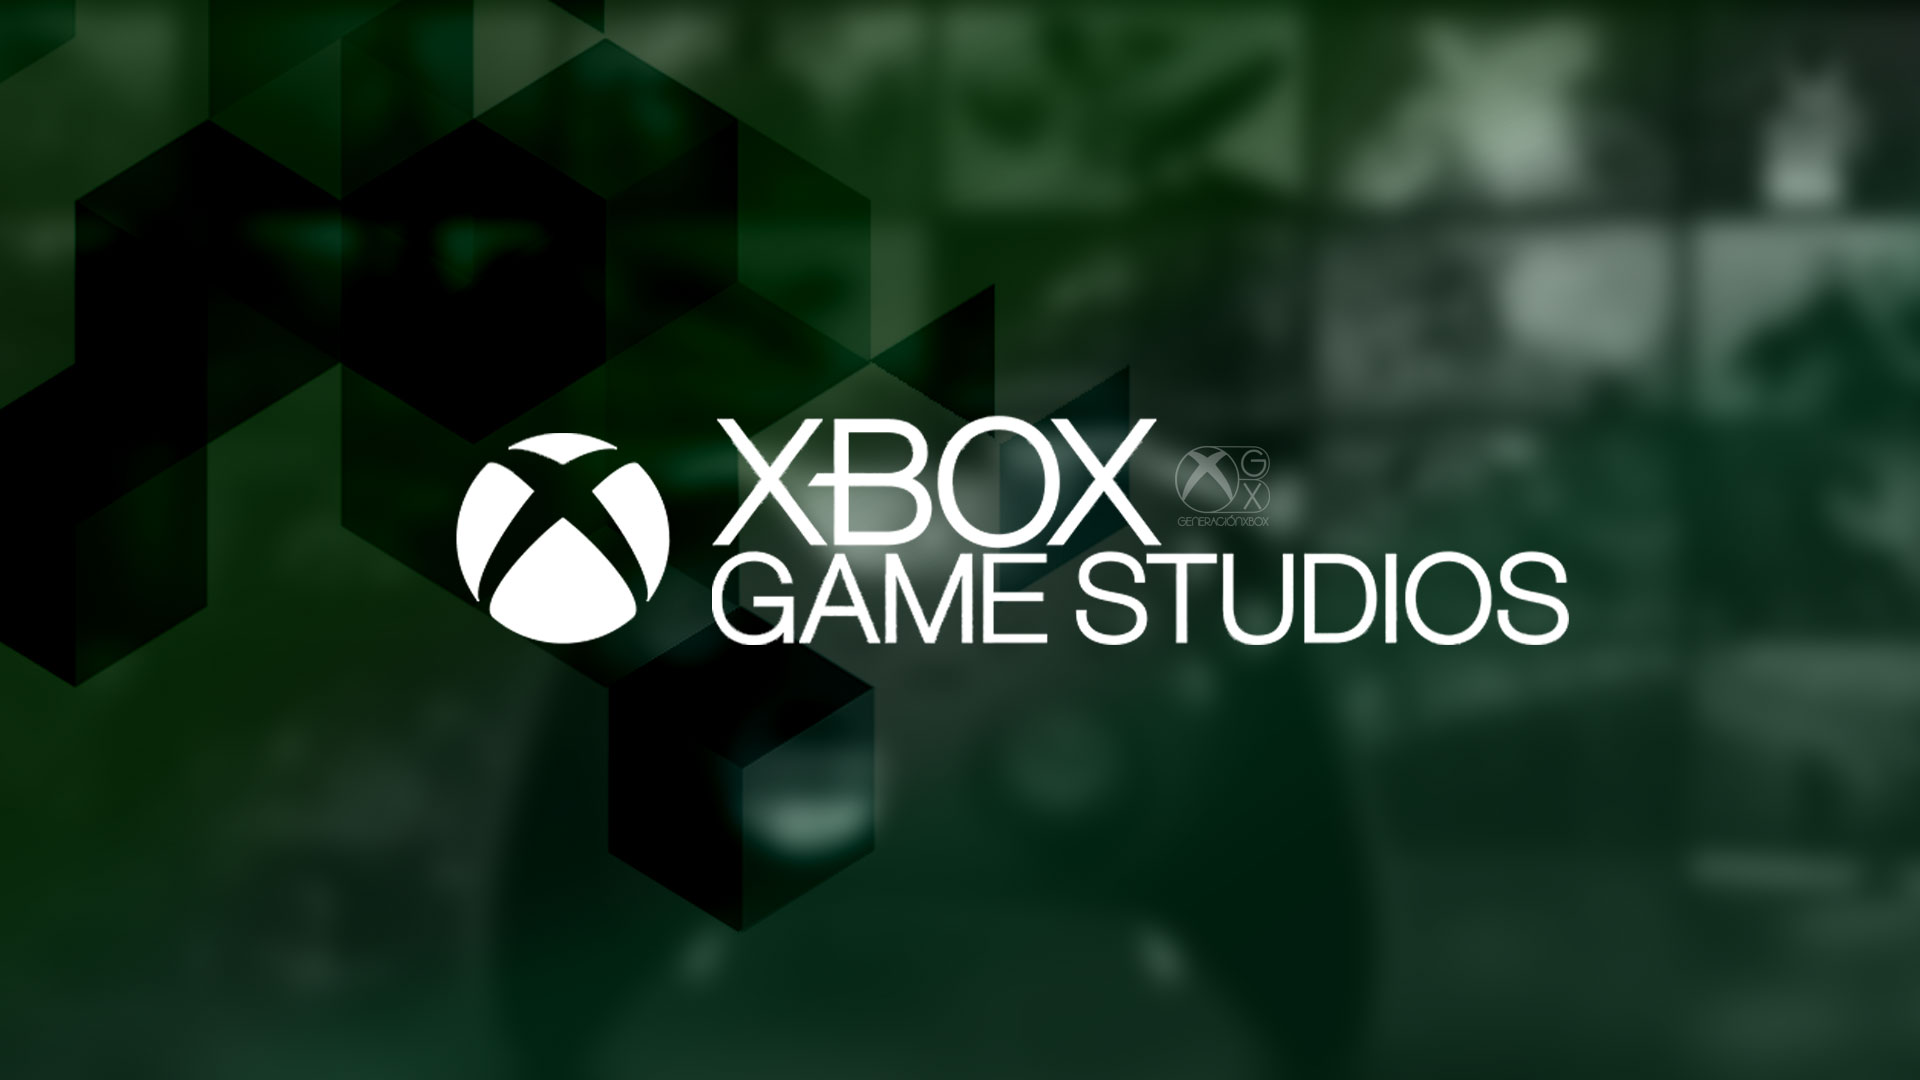 Detta är en stor volym av Xbox Game Studios-arbetare